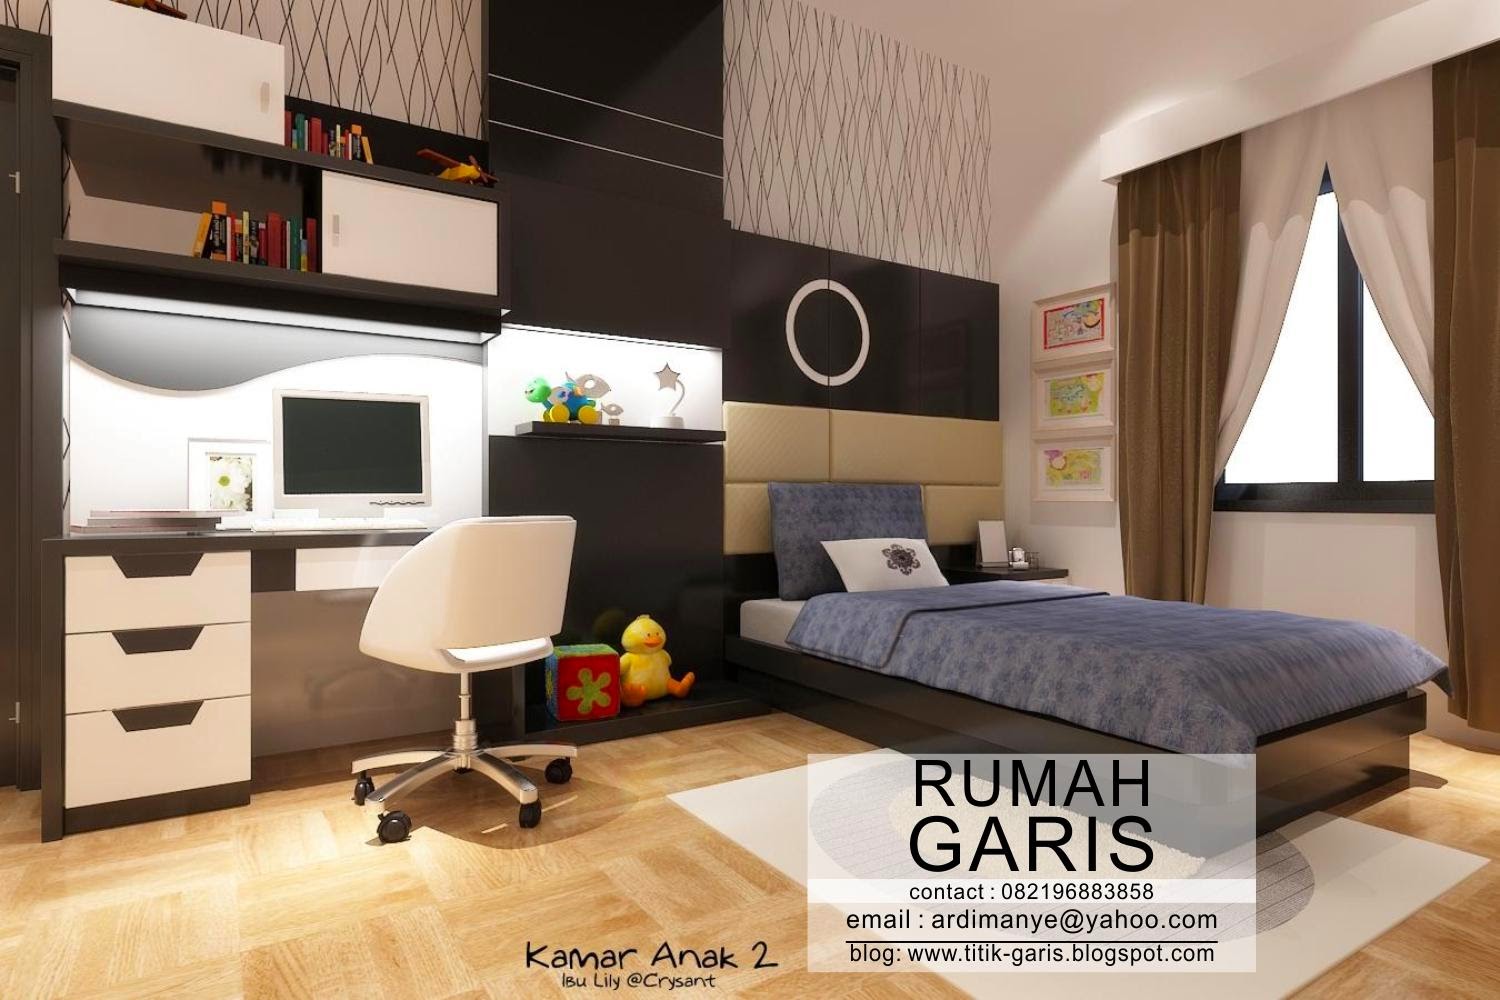  Desain  interior model kamar  anak ibu Lily Rumah Garis 